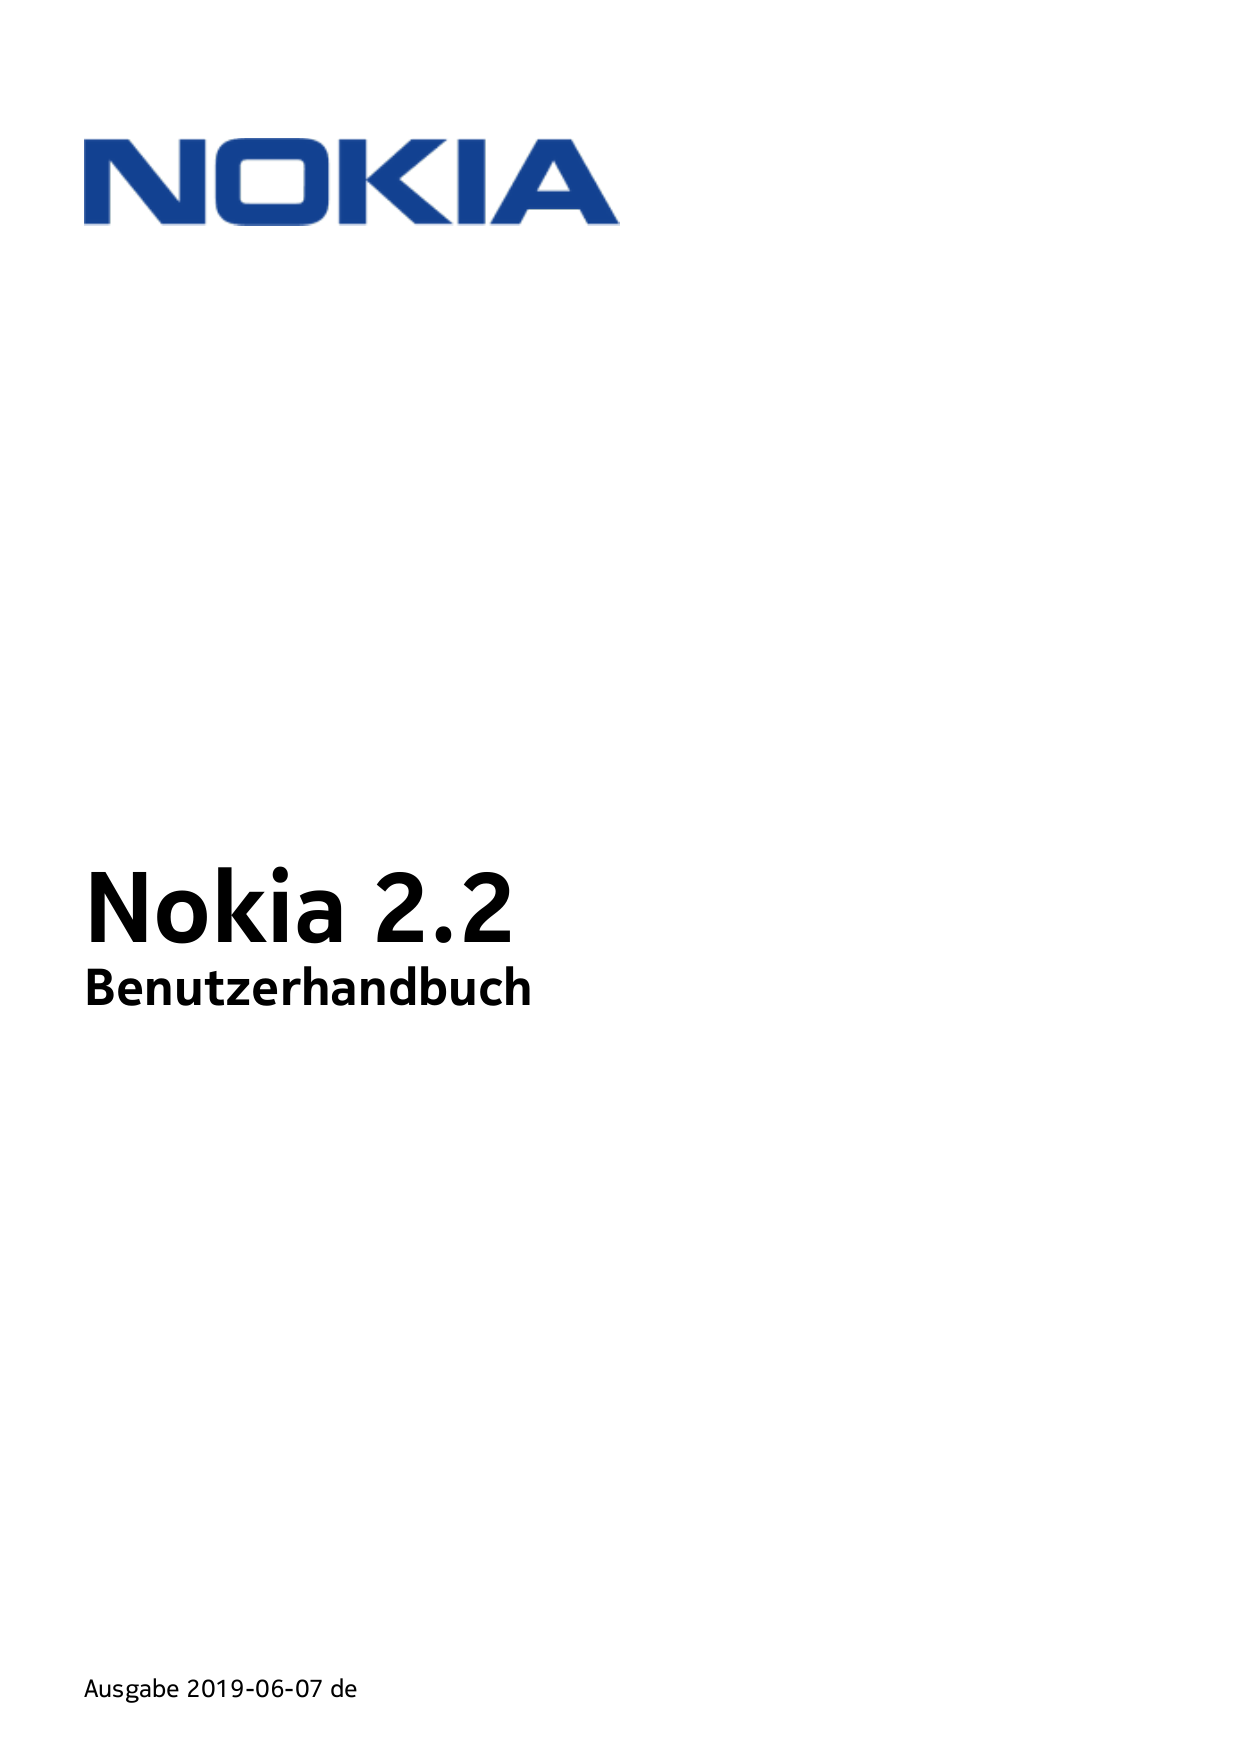 Nokia 2.2BenutzerhandbuchAusgabe 2019-06-07 de